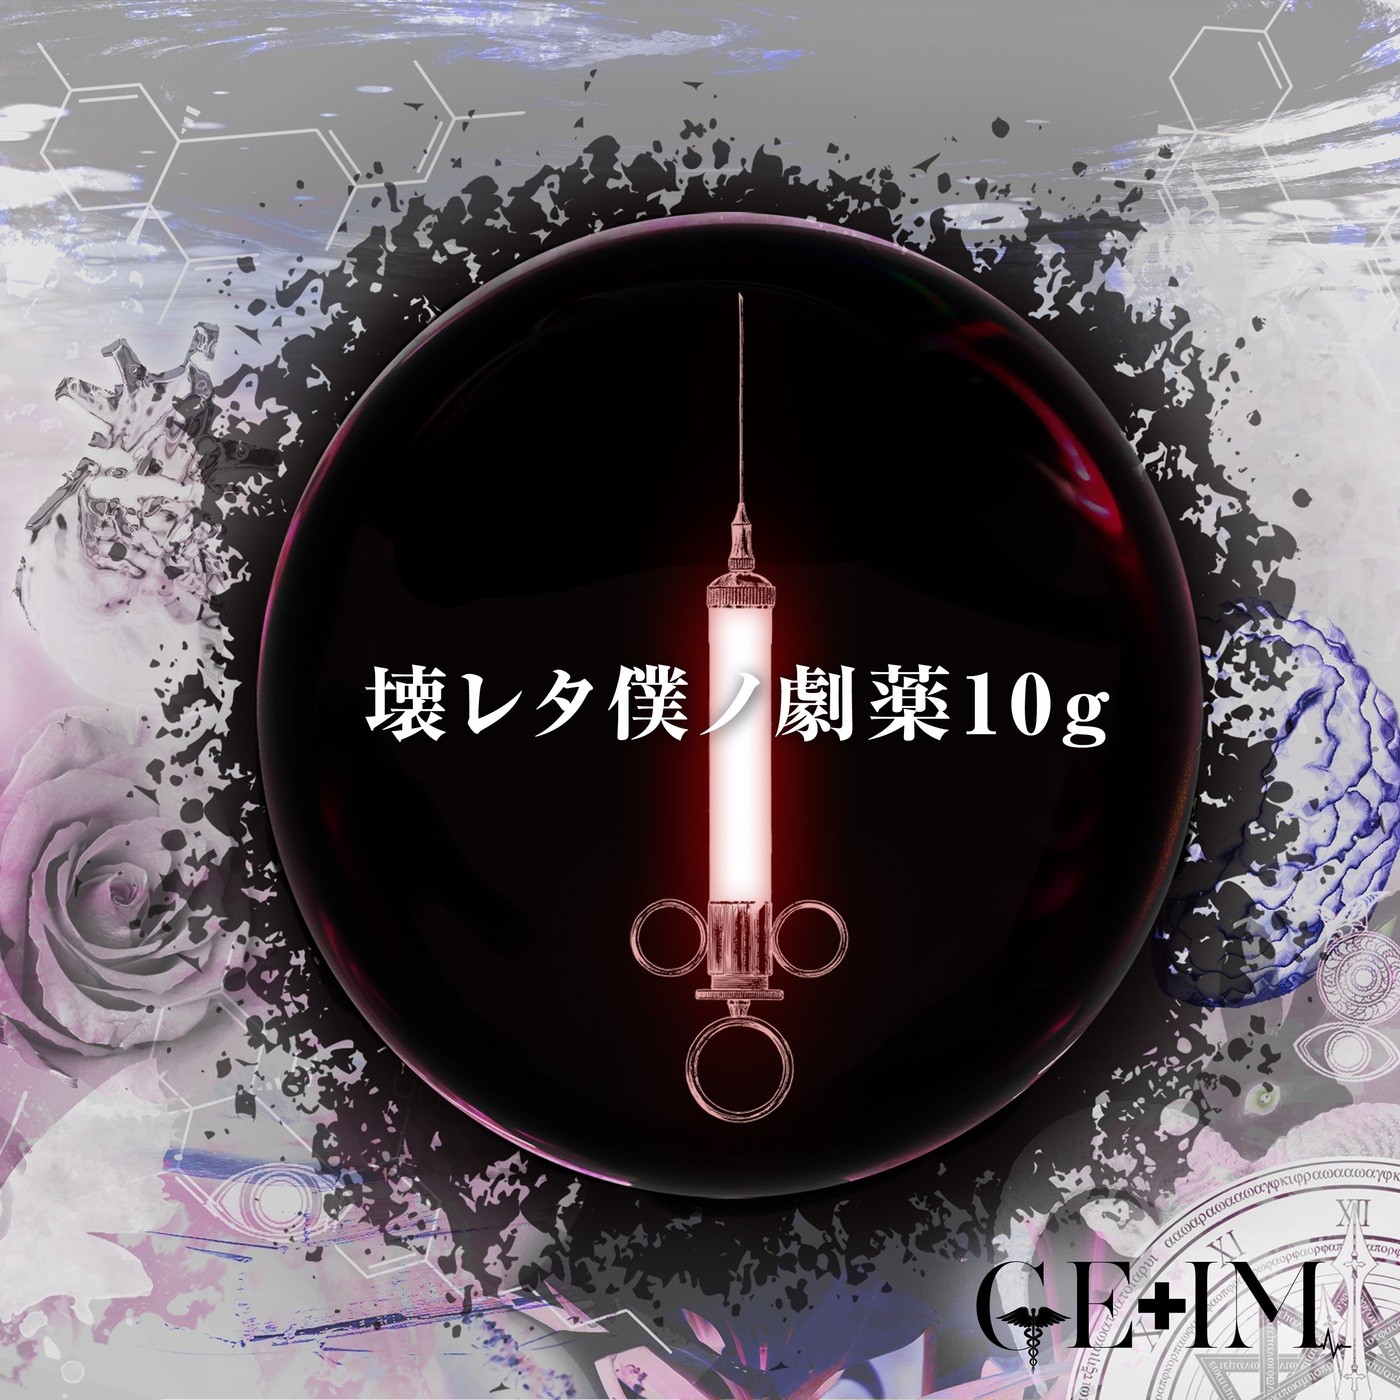 GE+IM – 壊レタ僕ノ劇薬10g [FLAC / WEB] [2021.07.01]